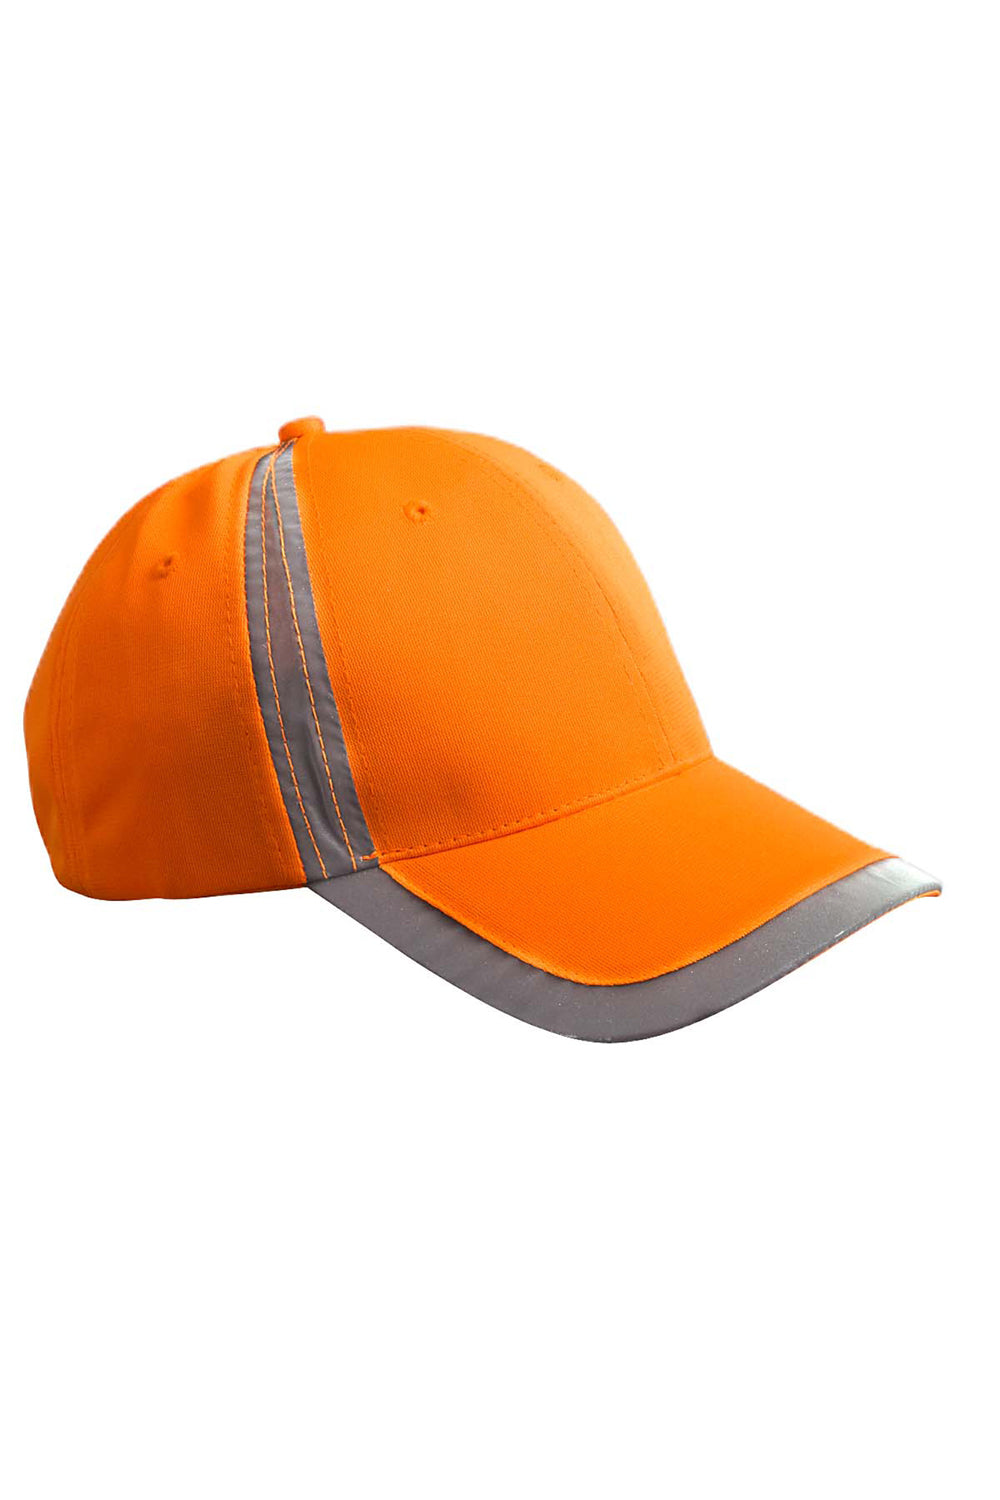 Big Accessories BX023 Mens Adjustable Hat Neon Orange Flat Front